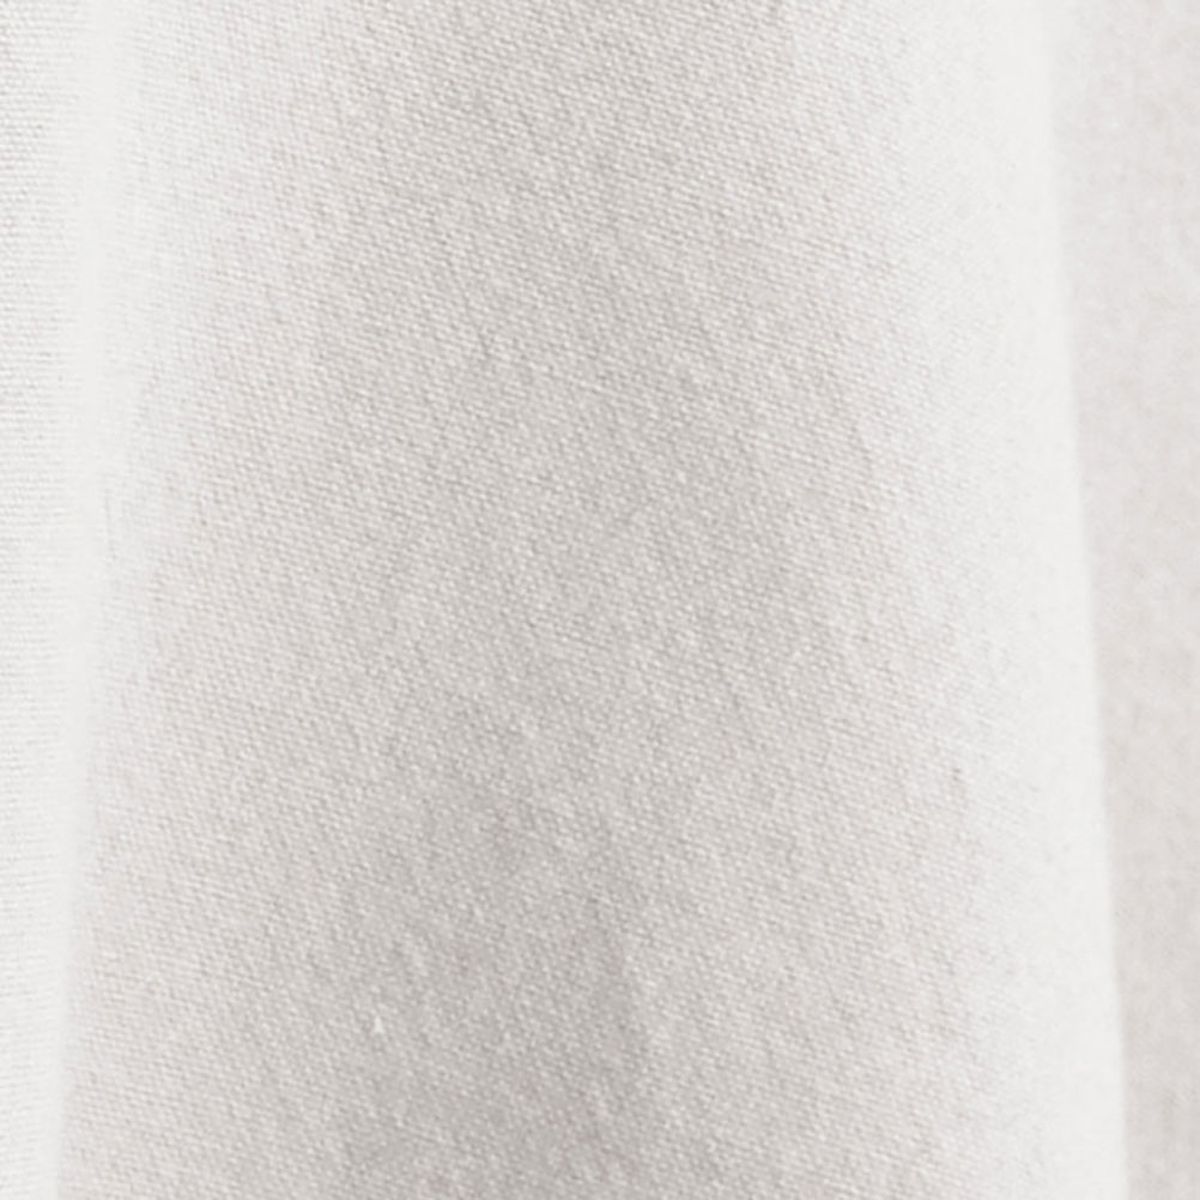 55777 - Nappe en coton teint lav - Naturel - 160 x 250 cm